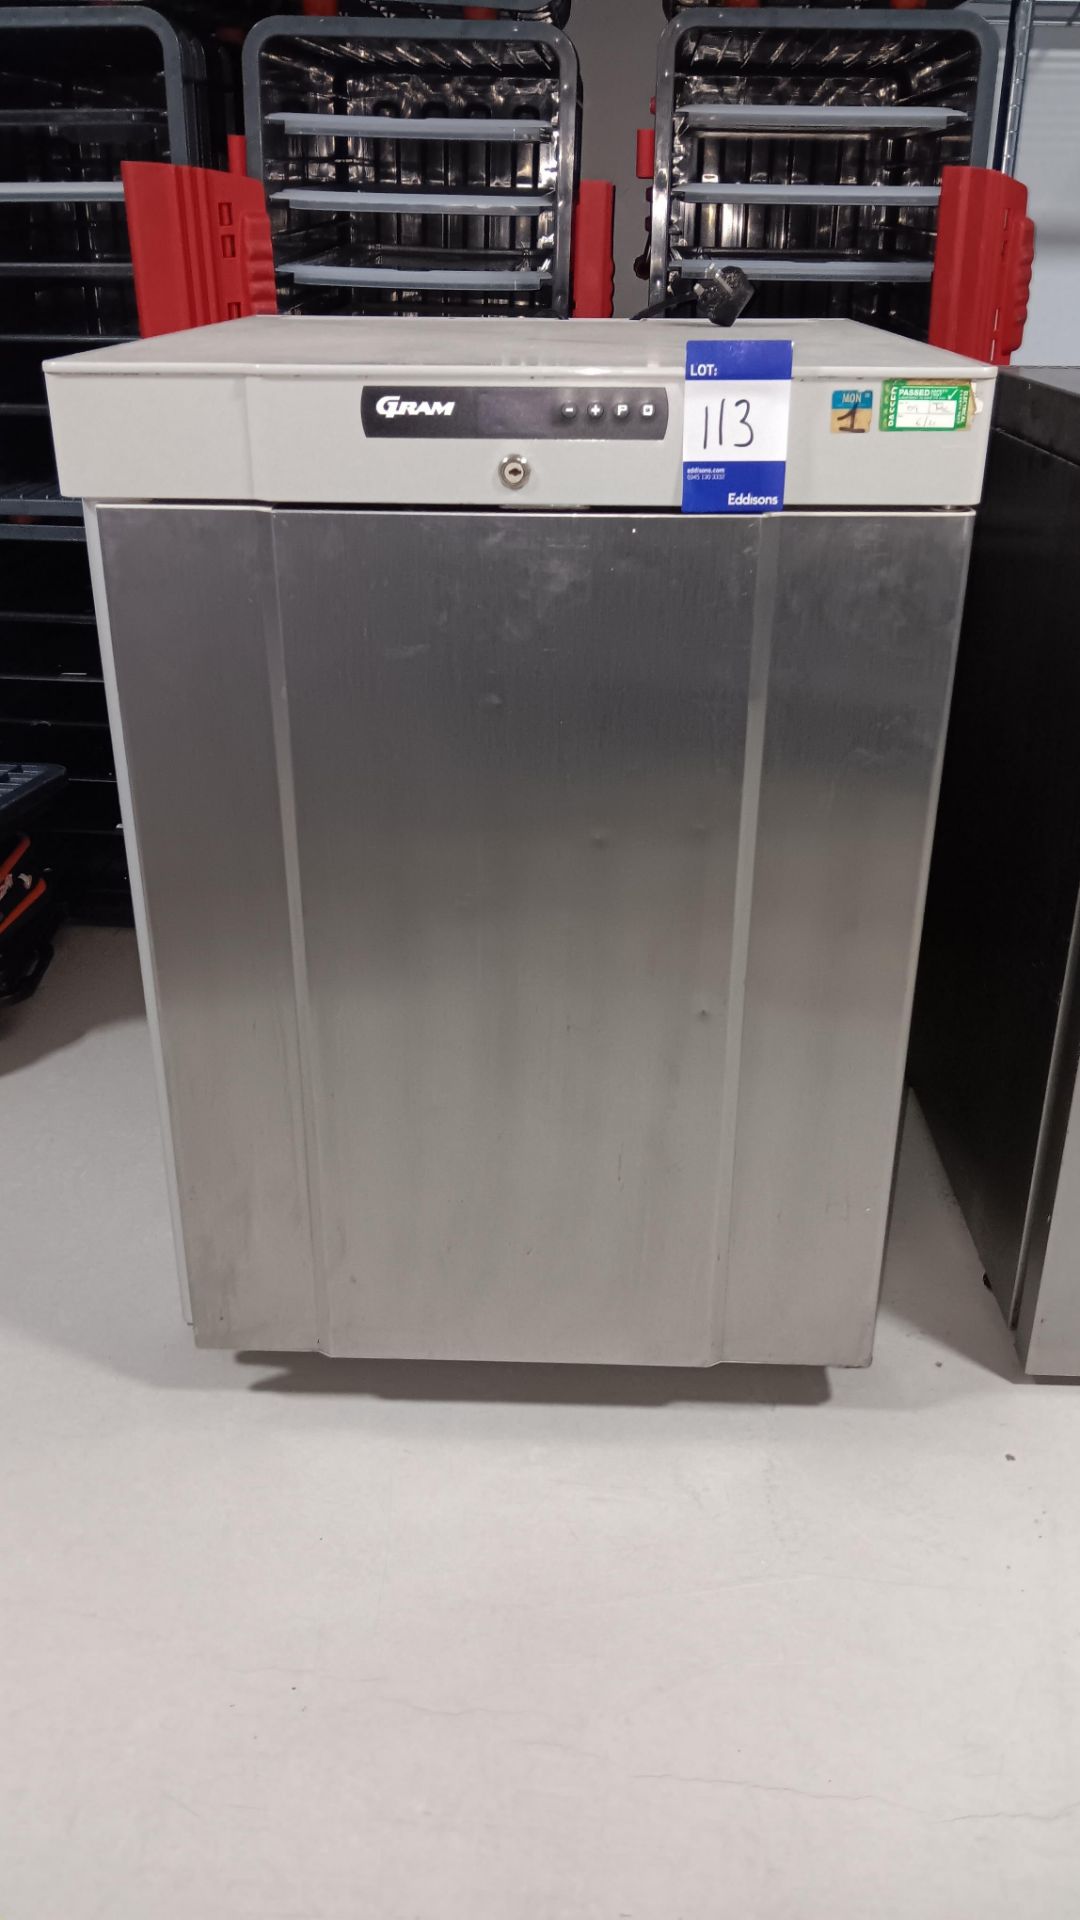 Gram K210RG3N Stainless steel undercounter single door refrigerator, Serial number 10121530 (Aug